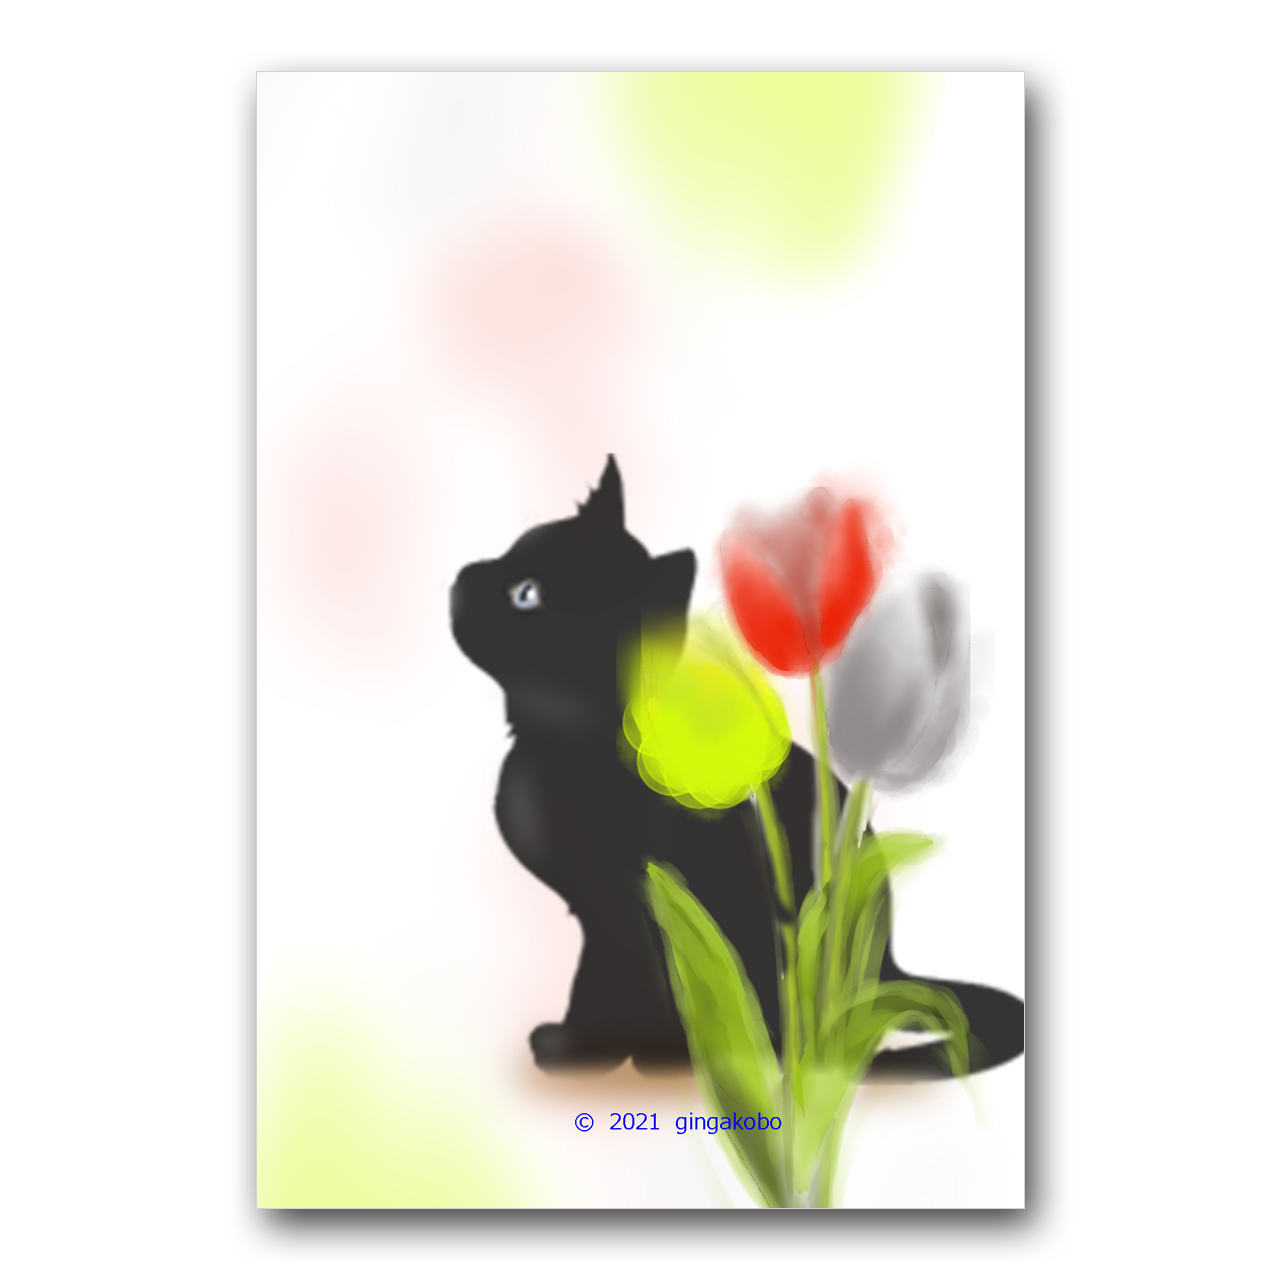 チューリップとニャン 猫 黒猫 チューリップ ほっこり癒しのイラストポストカード2枚組 No 1273 Iichi ハンドメイド クラフト作品 手仕事品の通販